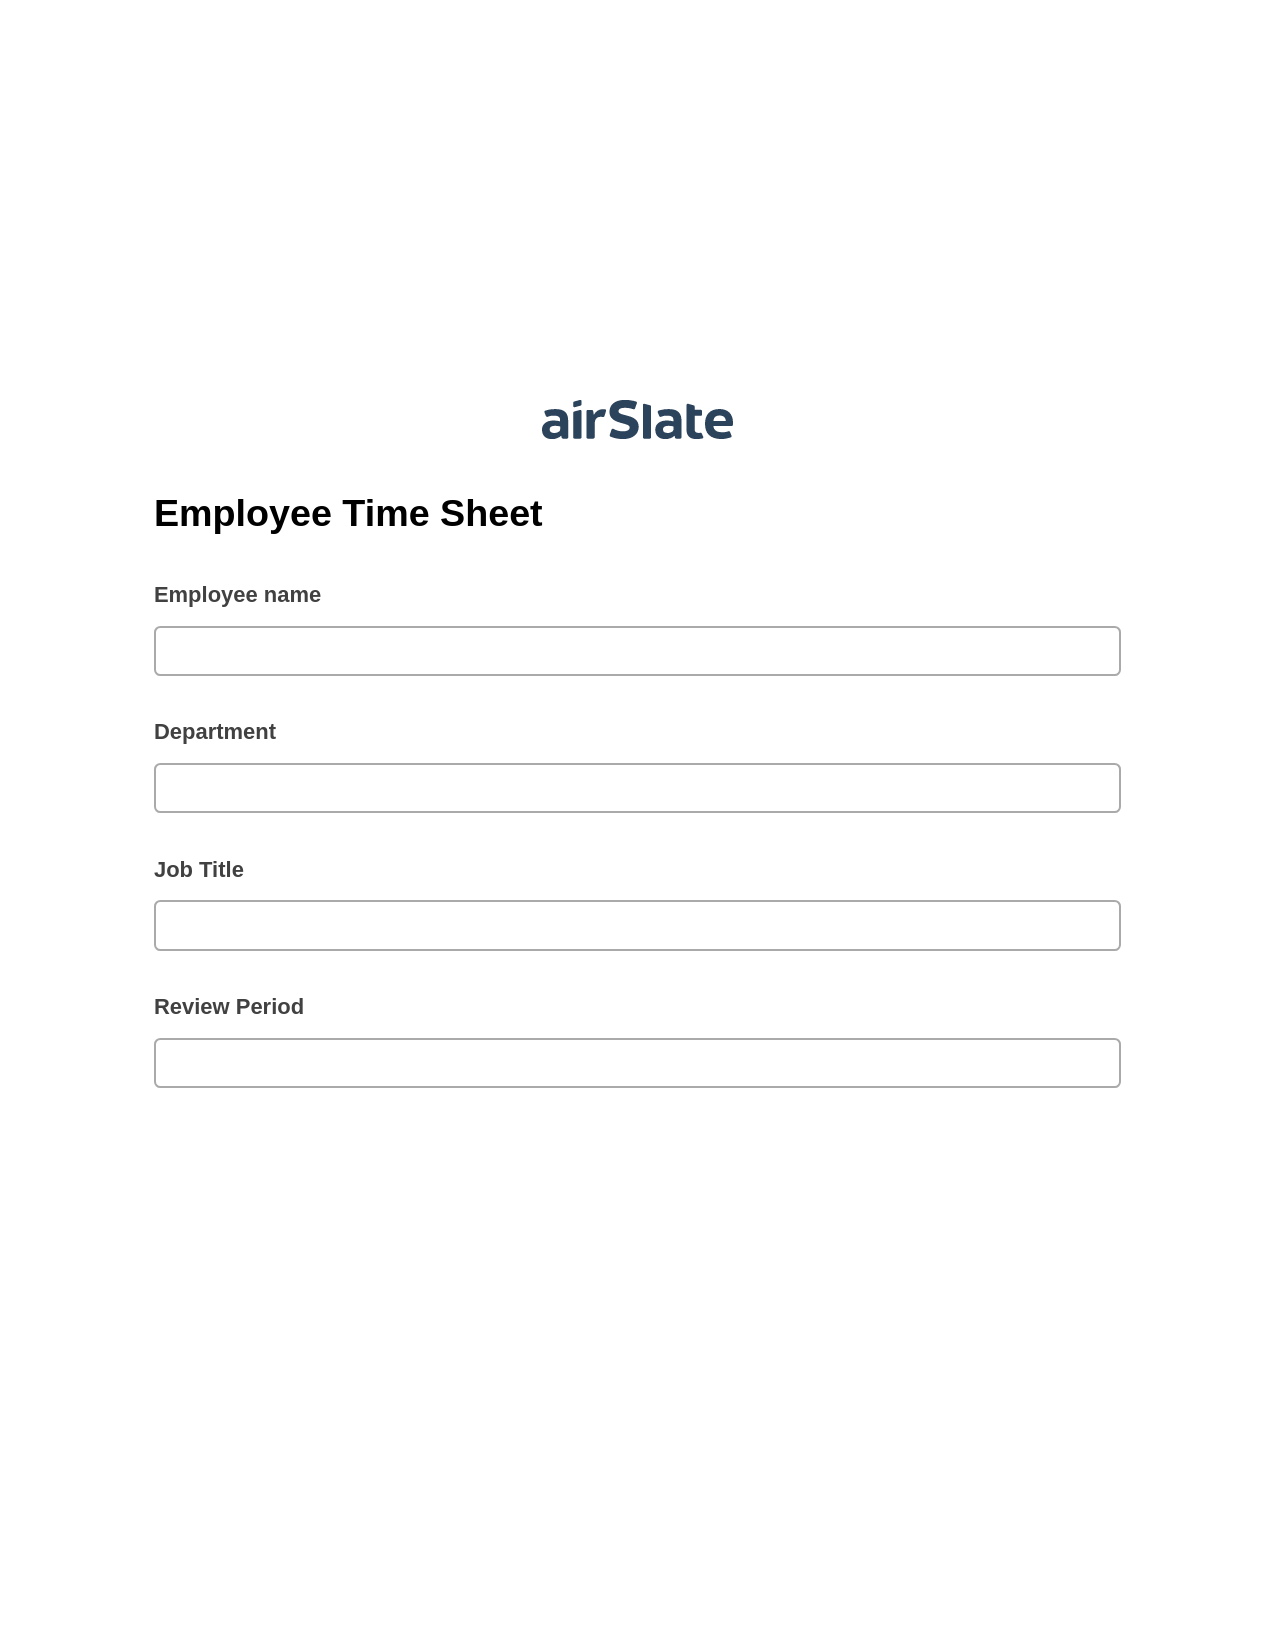 Employee Time Sheet System Bot - Slack Two-Way Binding Bot, Rename Slate Bot, Export to Excel 365 Bot